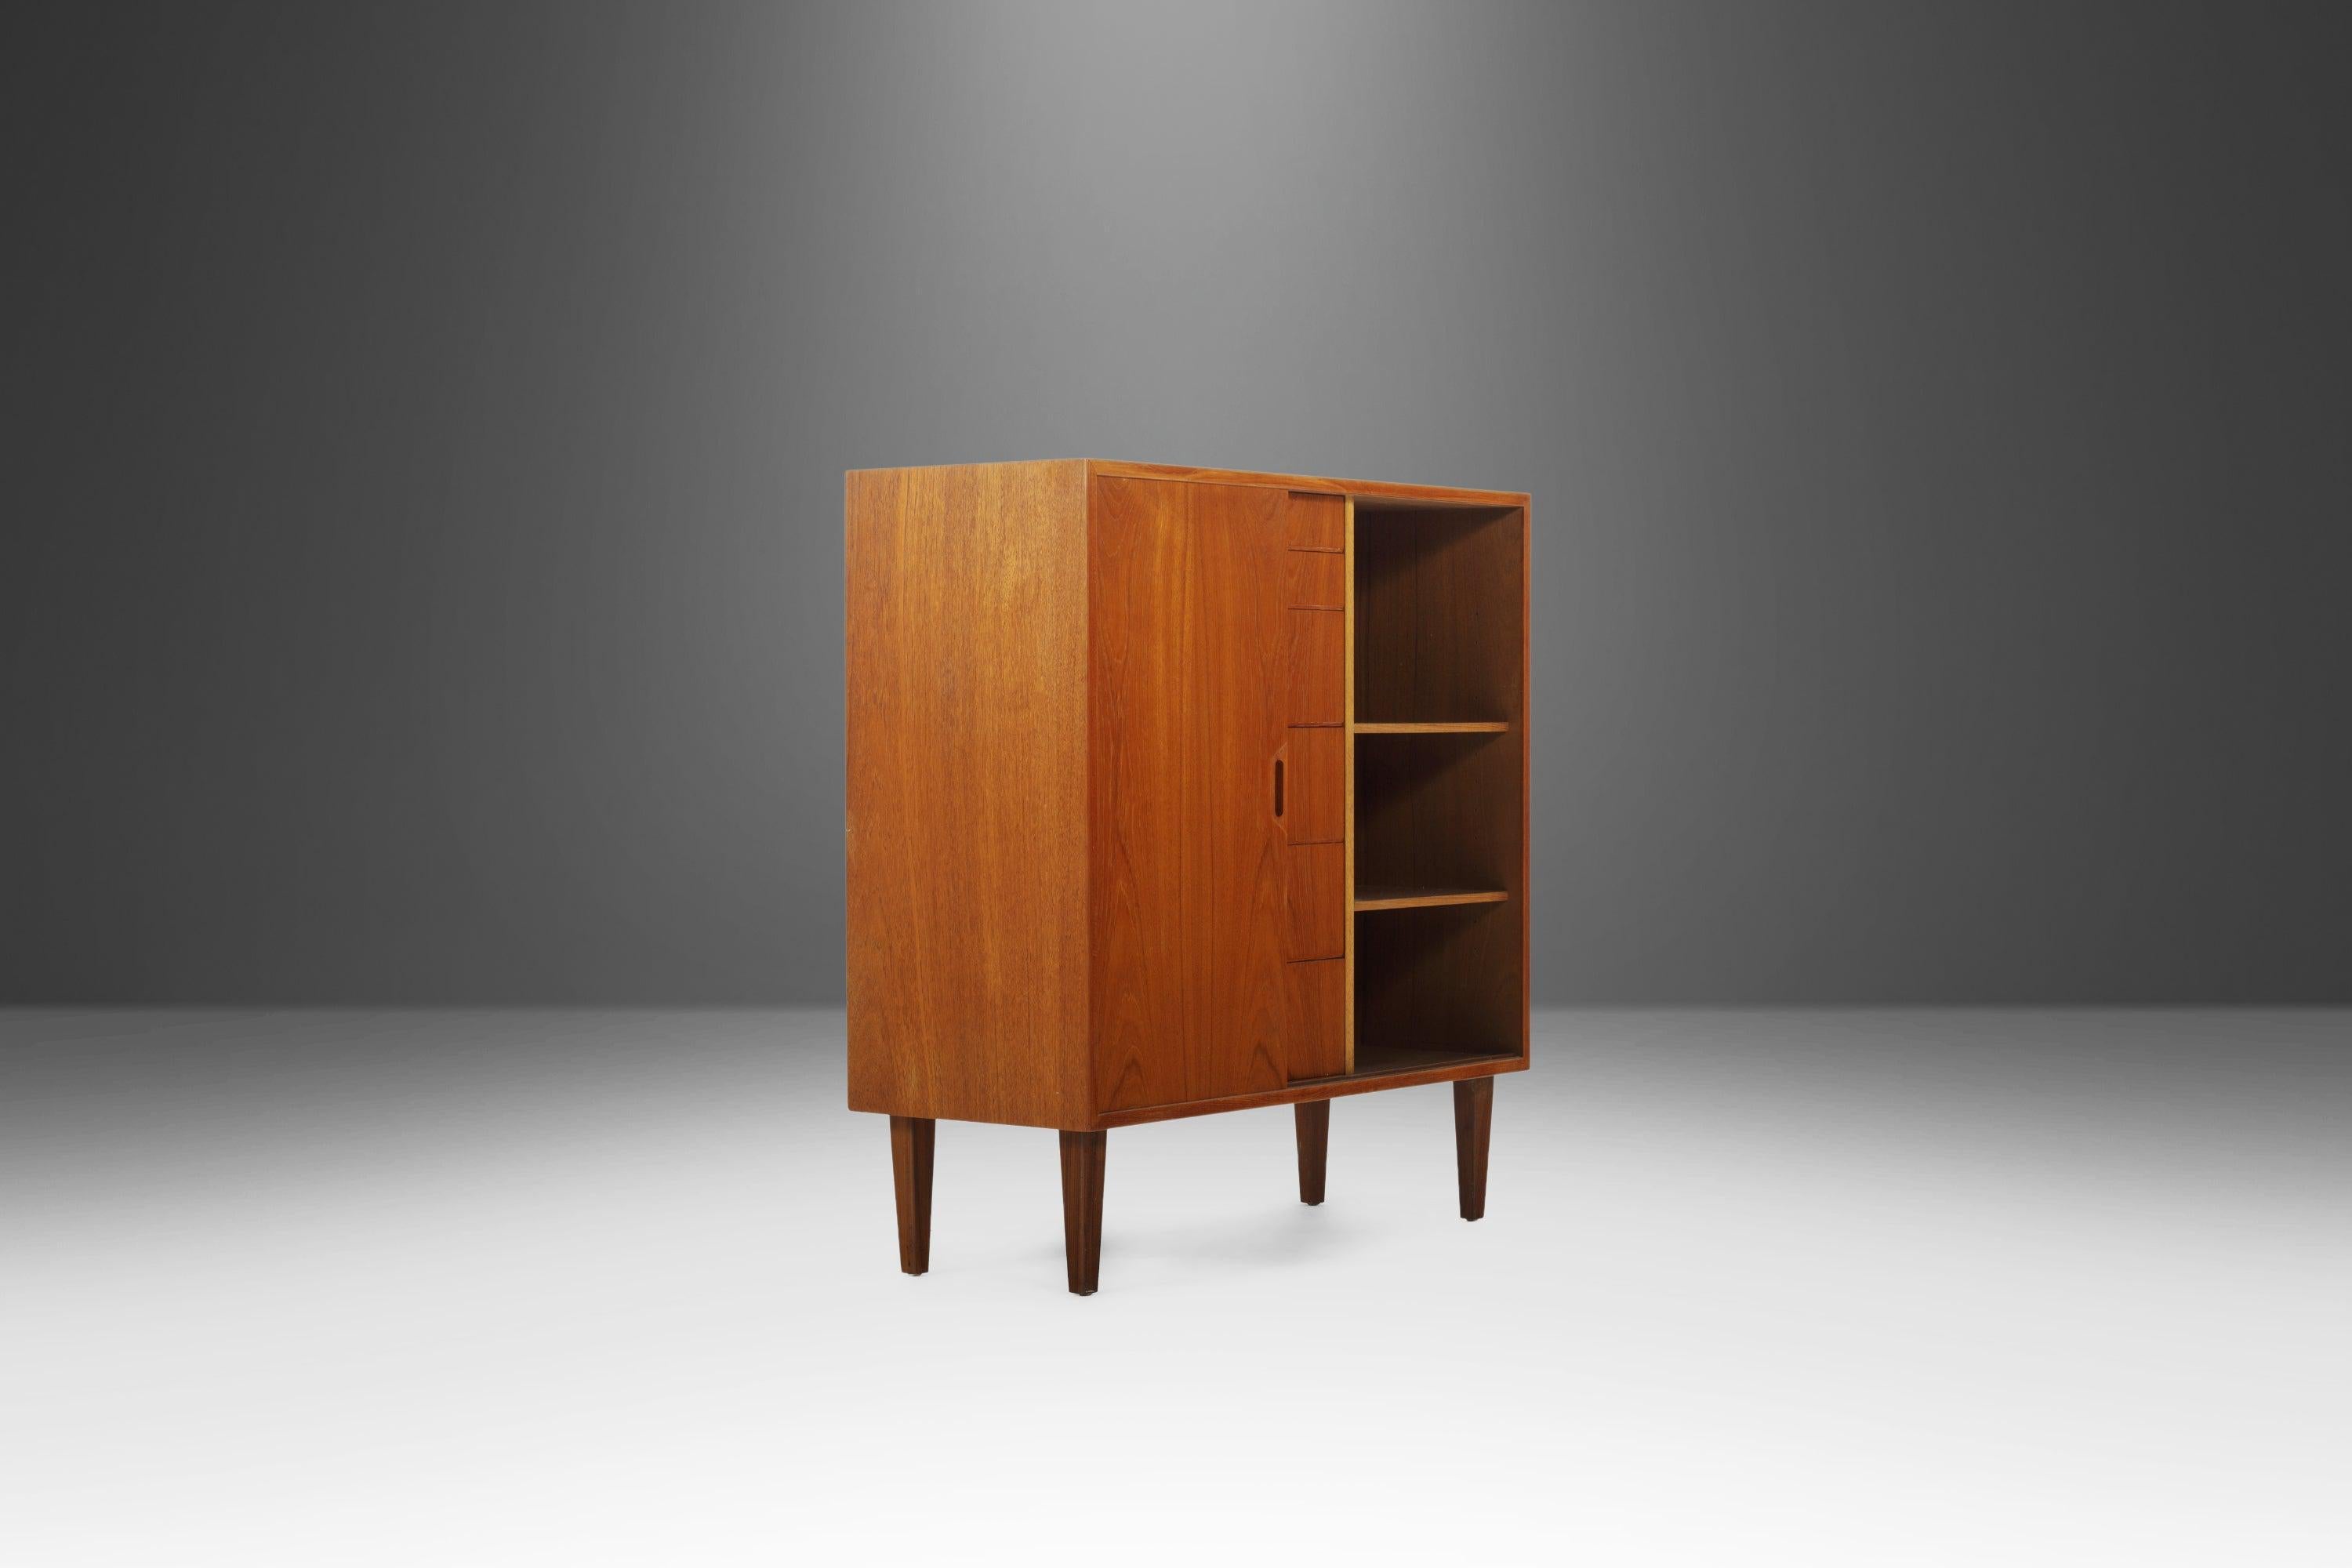 Mid-20th Century Danish Modern Gentleman's Dresser / Cabinet After Arne Vodder in Teak, c. 1960s